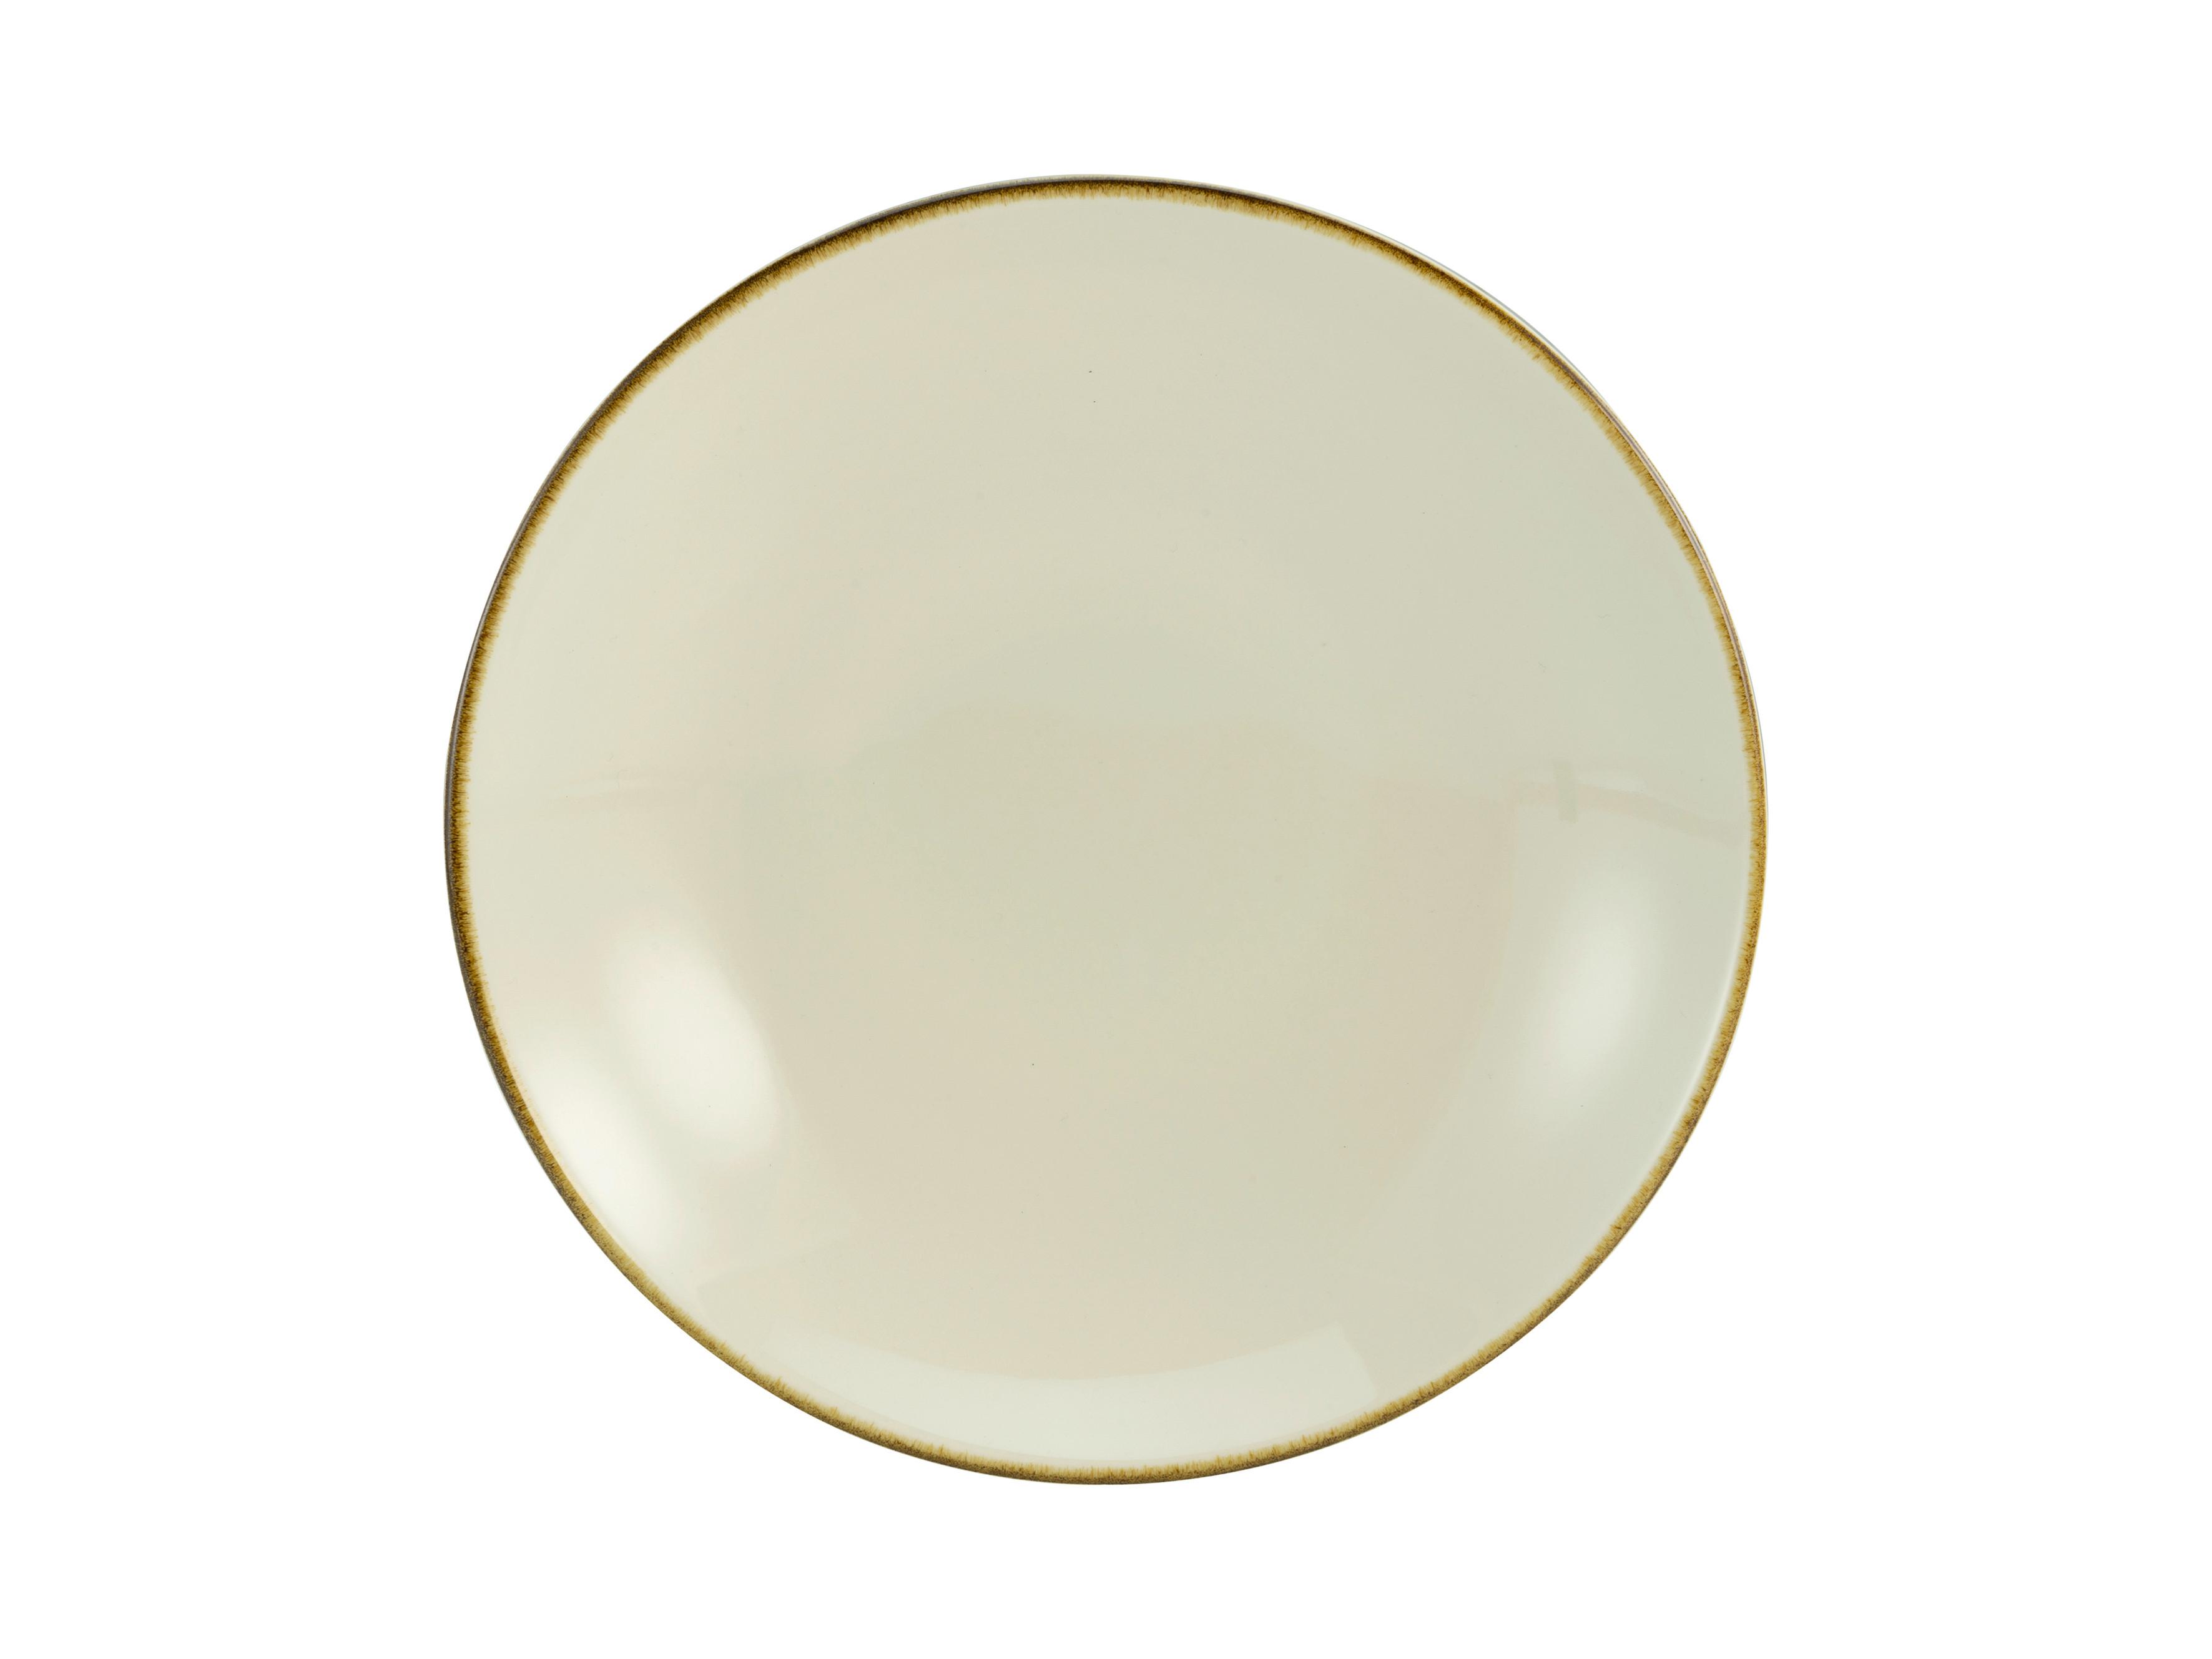 TALERZ DO ZUPY LINEN - kremowy/biały, ceramika (22/22/4cm) - Premium Living